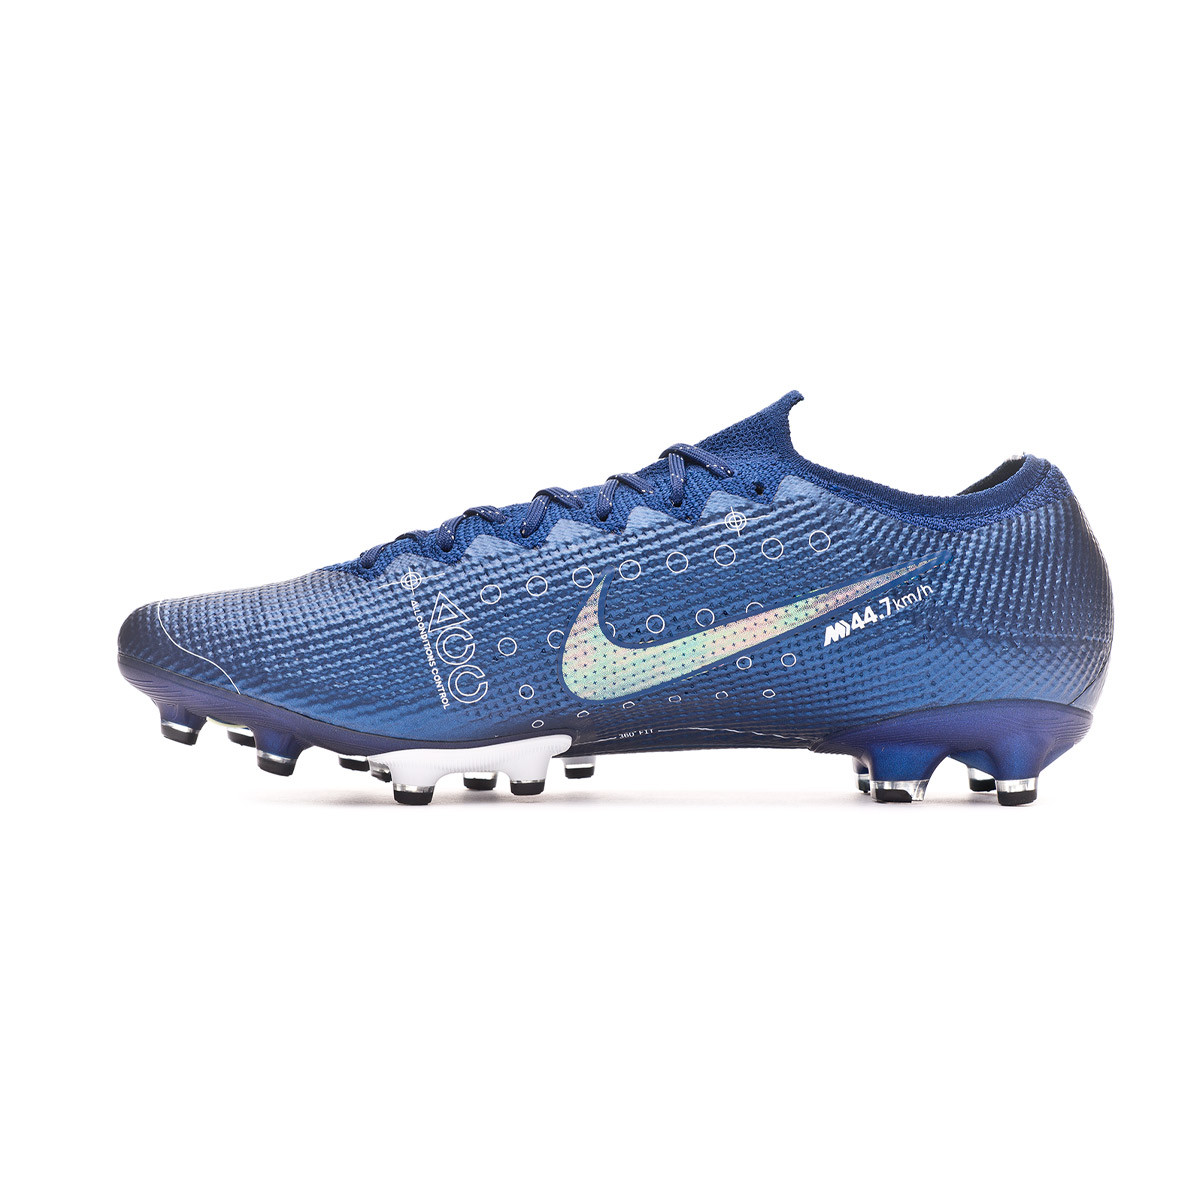 Nike Mercurial Vapor 13 Club TF Artificial Turf Soccer Shoe in.